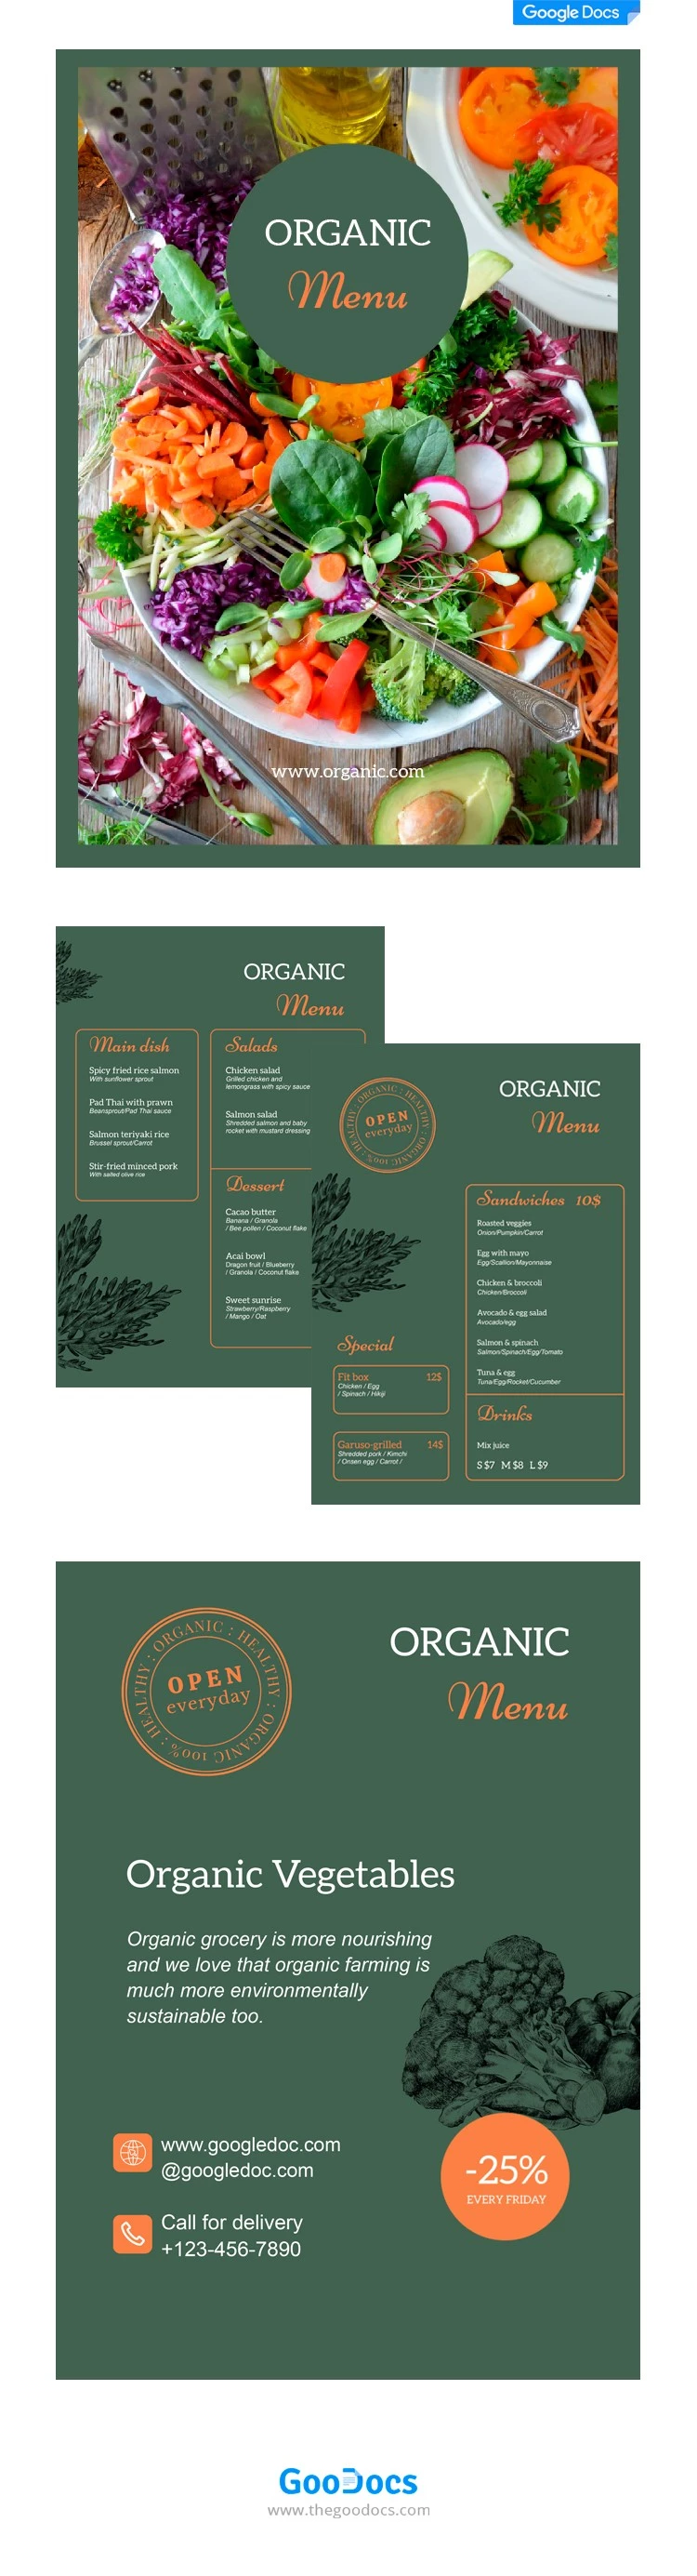 Menú de alimentos orgánicos - free Google Docs Template - 10062112